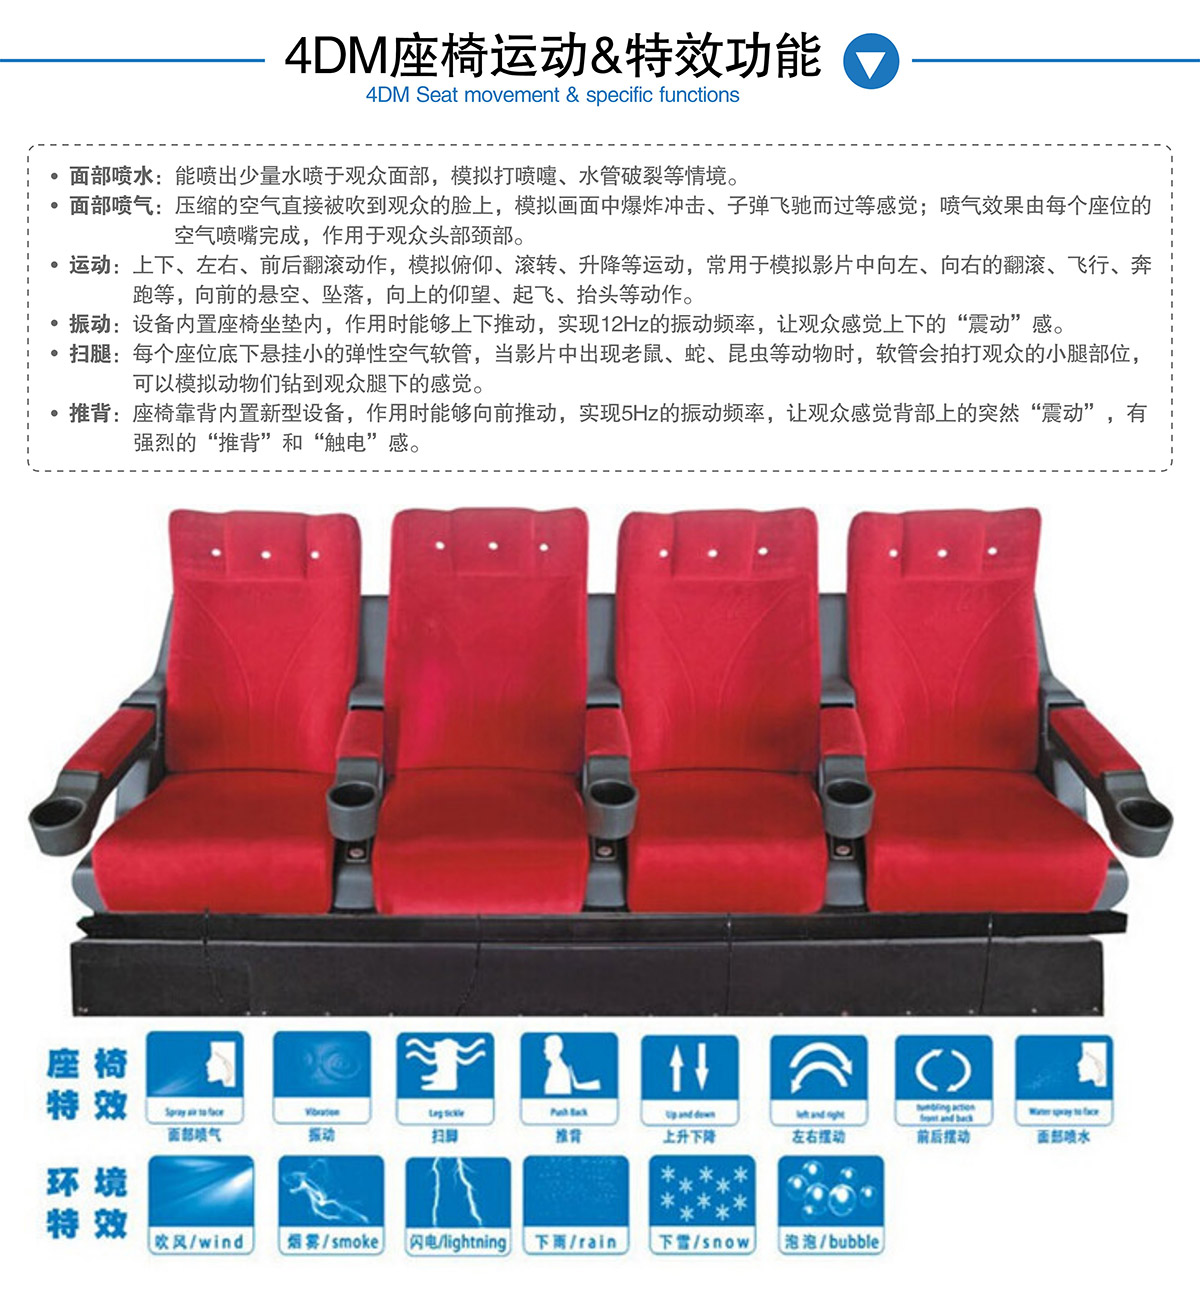 模拟安全4DM座椅运动和特效功能.jpg